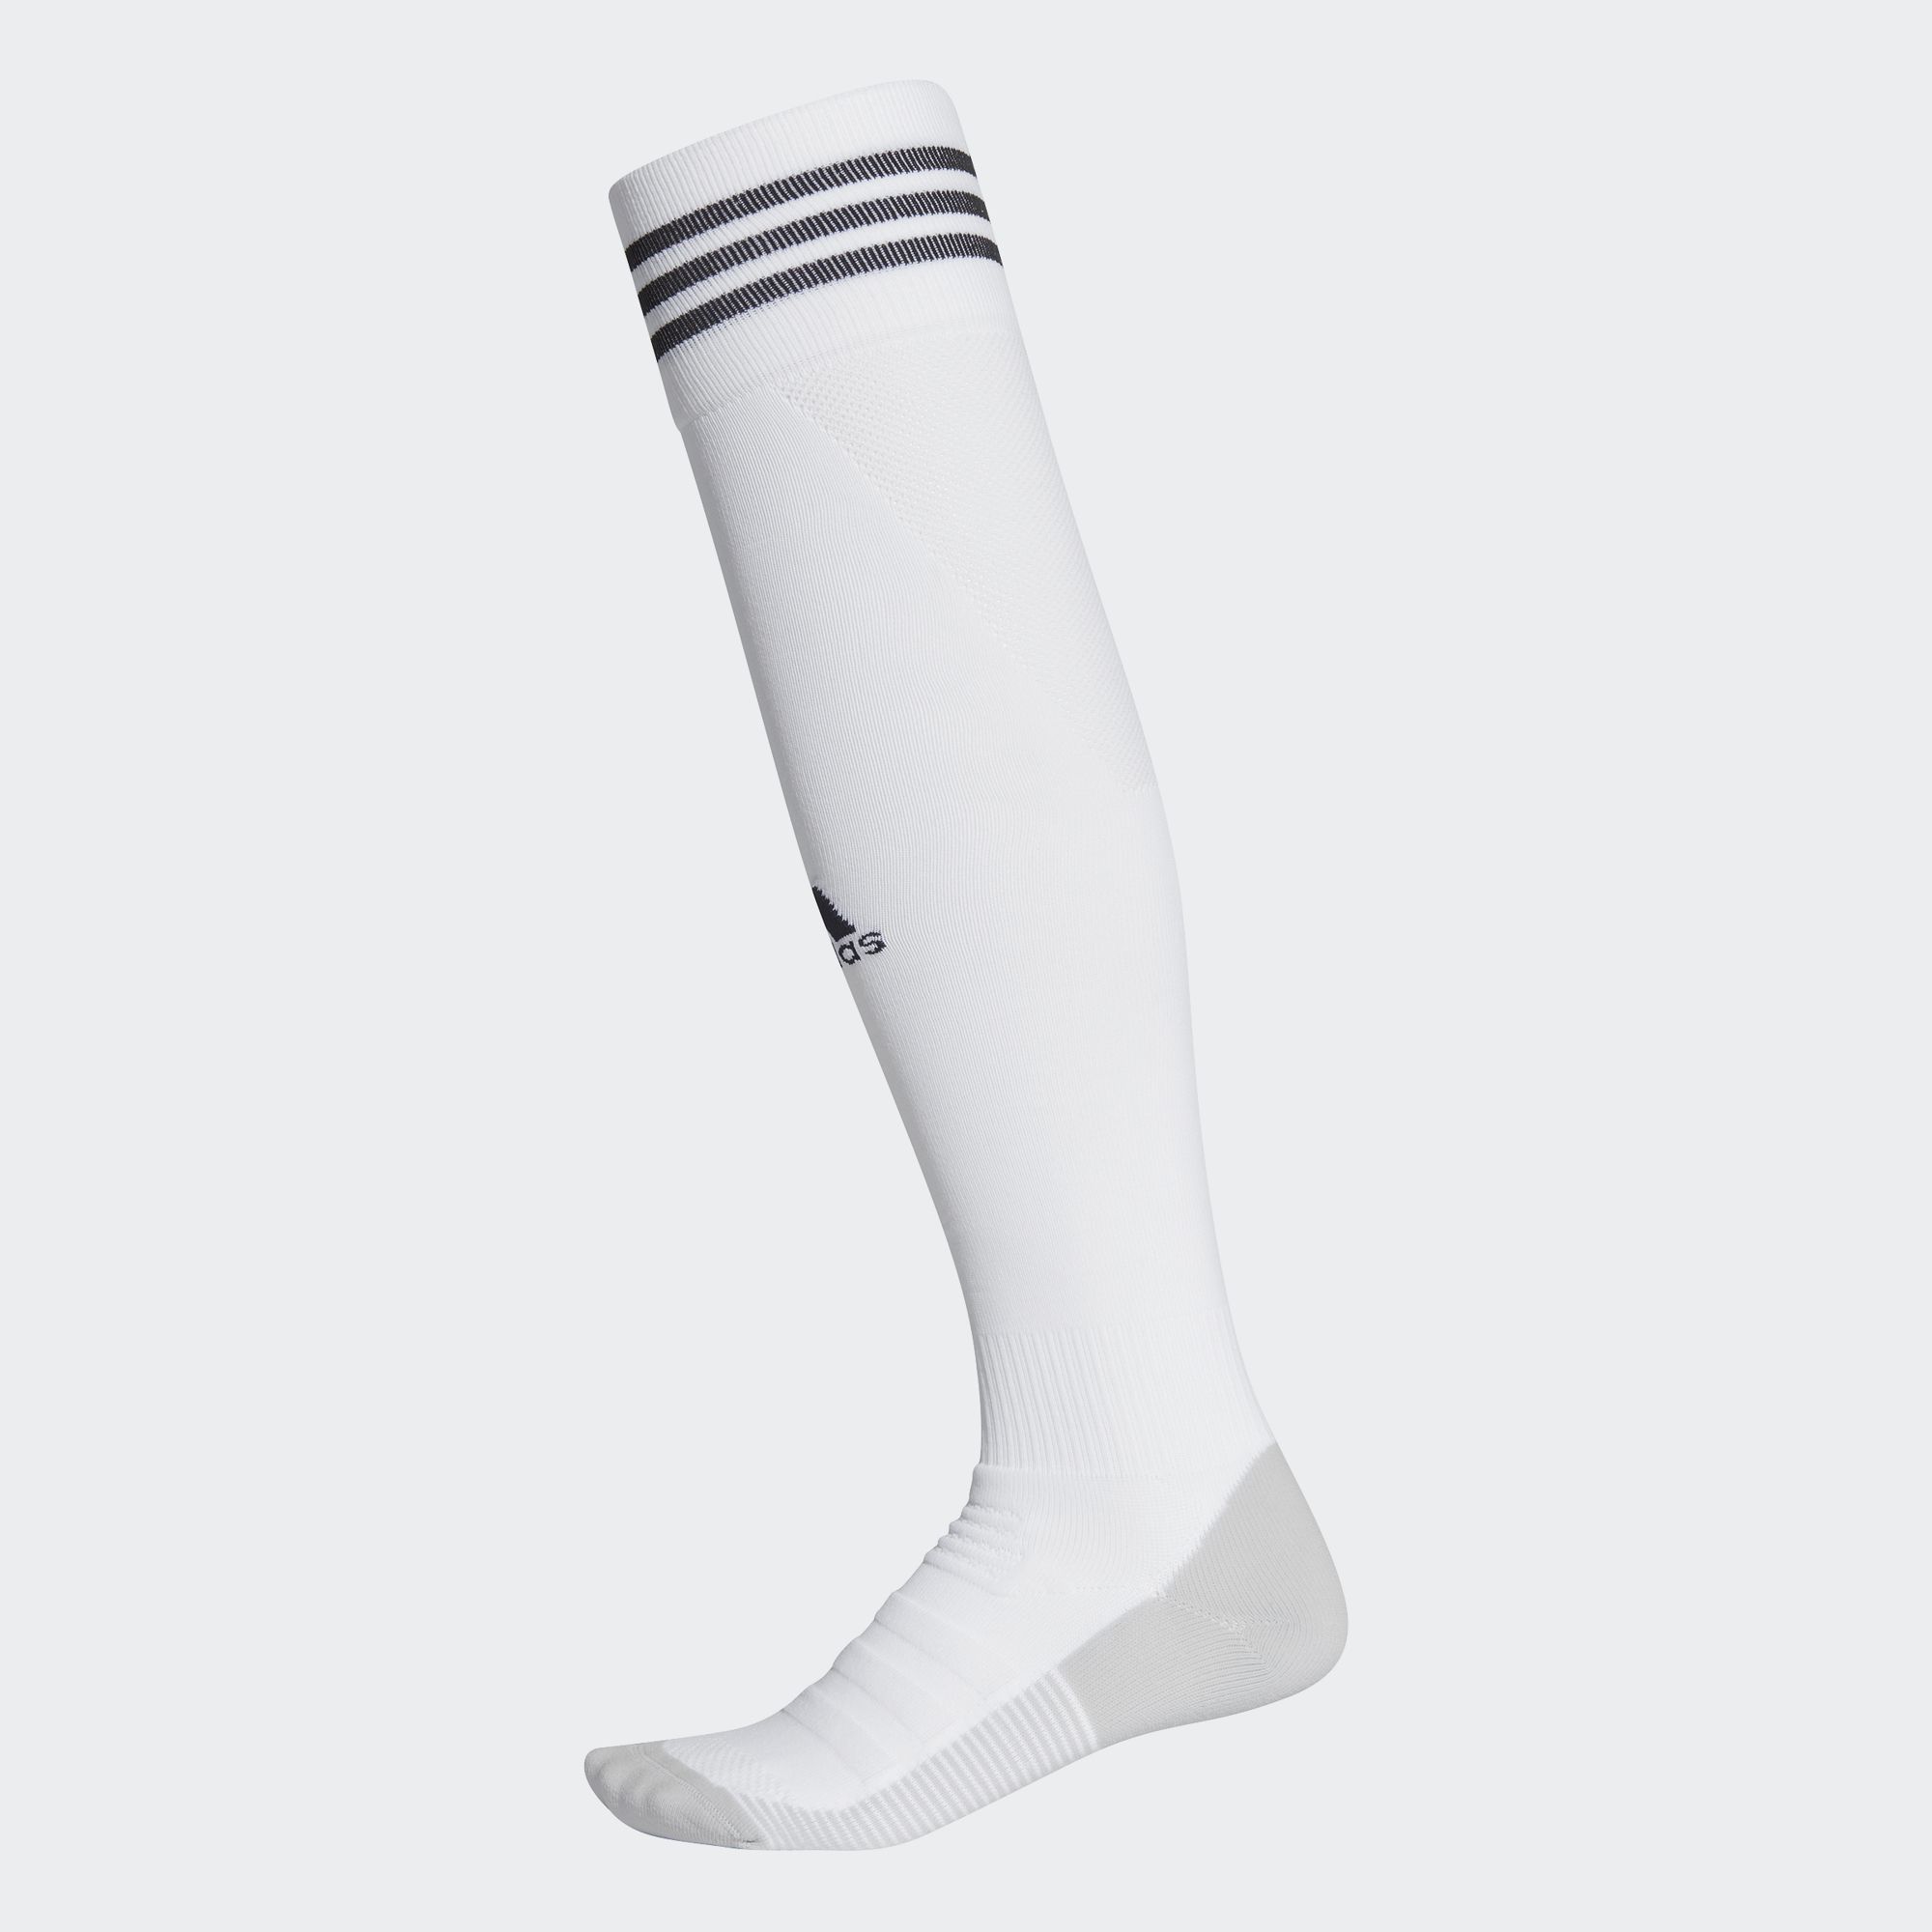 adidas mens soccer socks